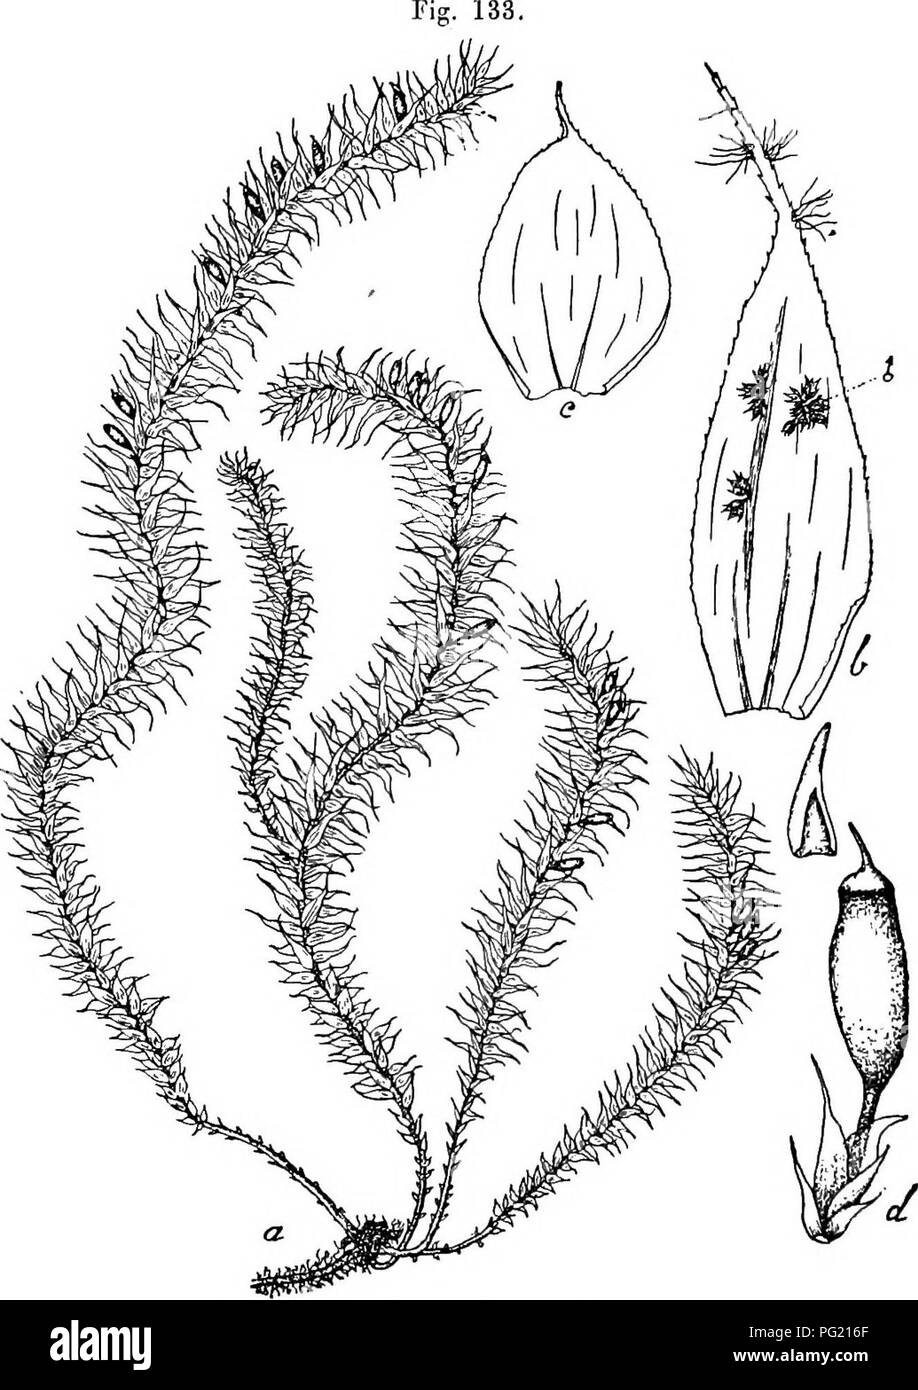 . Flore de Buitenzorg. Botany. 712 gonien zahlreich mit sparlichen, uugefahr gleichlangen Para- physen. Aussere Hullblatter kleiner, langlich-oval, schmal zuge- Fig. 1. Endotrichella elegans (Dz. et Mii.) Flsch. a. Habitusbild (oatiirl. Gi'osse). v. Untei'o Stengelblritter. b. Stengelblatt mit c/ Zweigpflanzen V°- &lt;^- Sporogon mit Haubo '/. spitzt, eingebuchtet und plotzlich in eine schmale, ver- bogene Blattspitze ausgezogen, alle rippeulos. — Pflanzen in lockeren, buscheligen, meist herabhangenden Rasen, melir oder weniger seidenglanzeud, lebhaft grun. Primarer Stengel kurz, kriechend, di Stock Photo